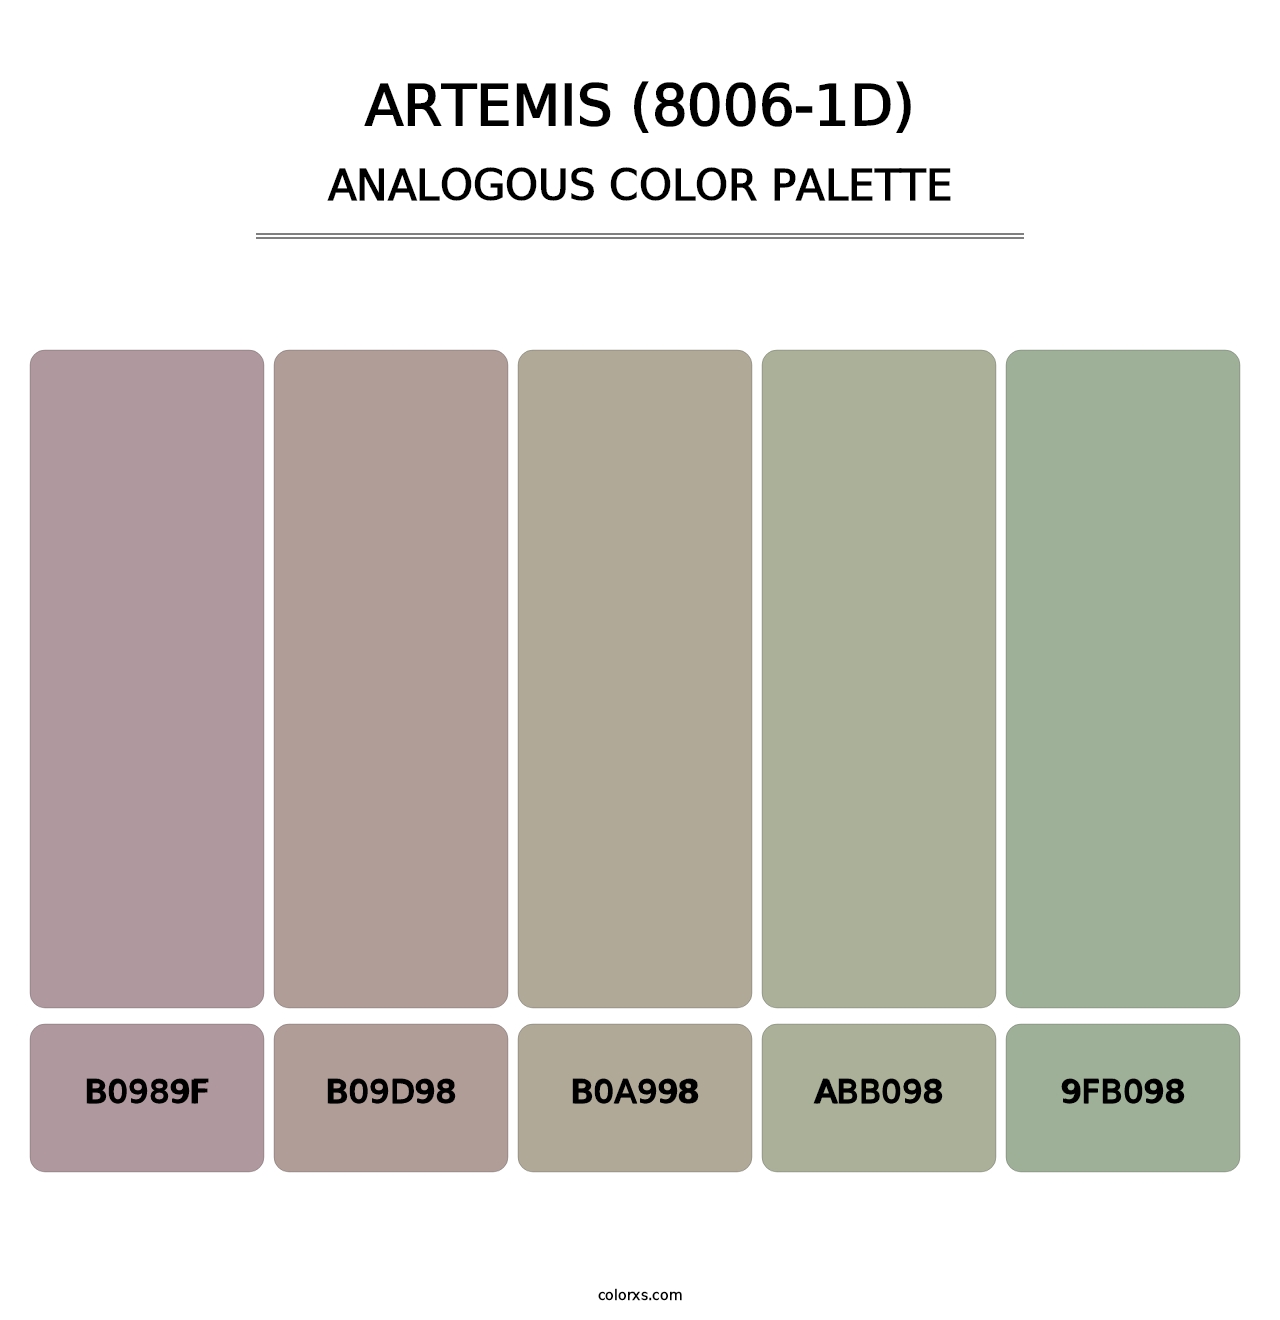 Artemis (8006-1D) - Analogous Color Palette